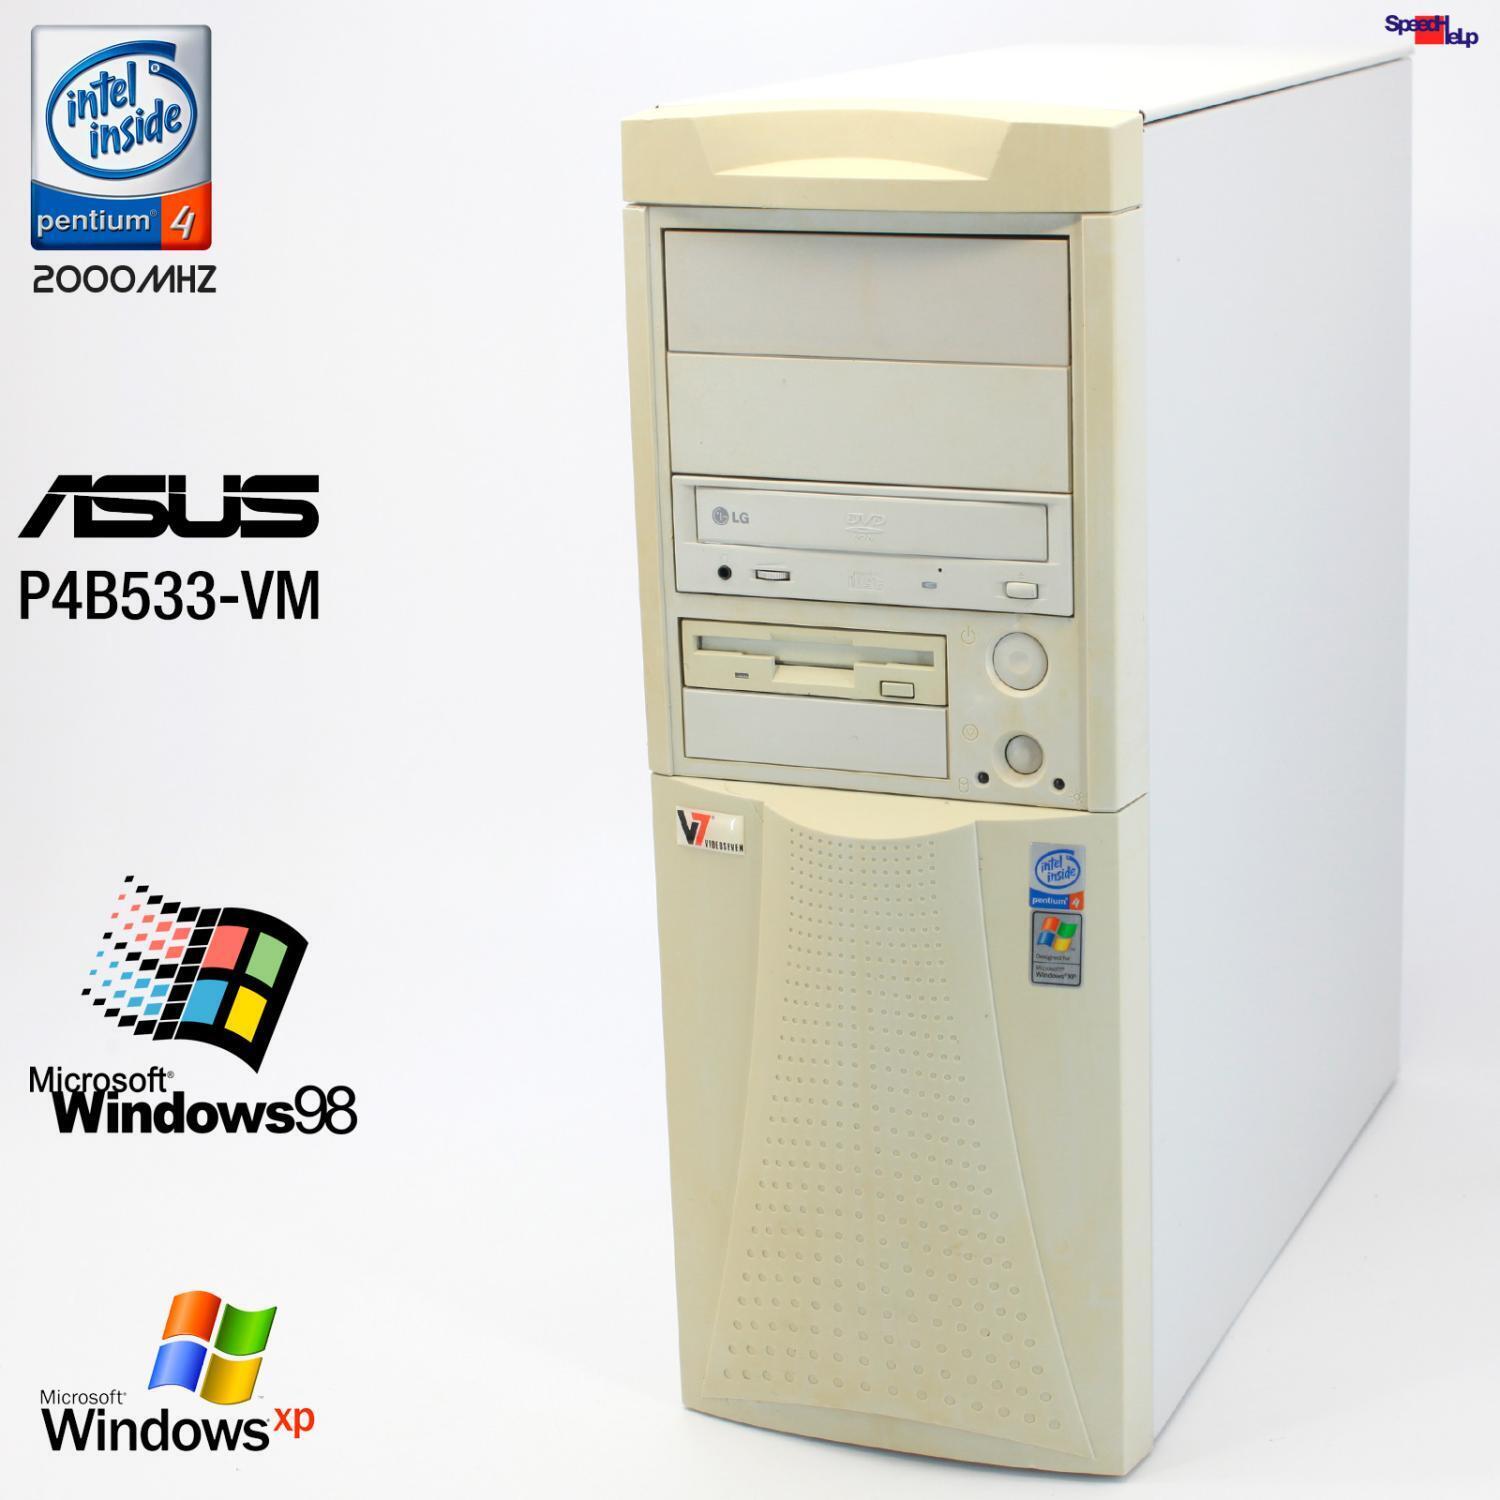 Pentium 4 2000MHZ Computer PC ASUS P4B533-VM Parallel Windows 98 2000